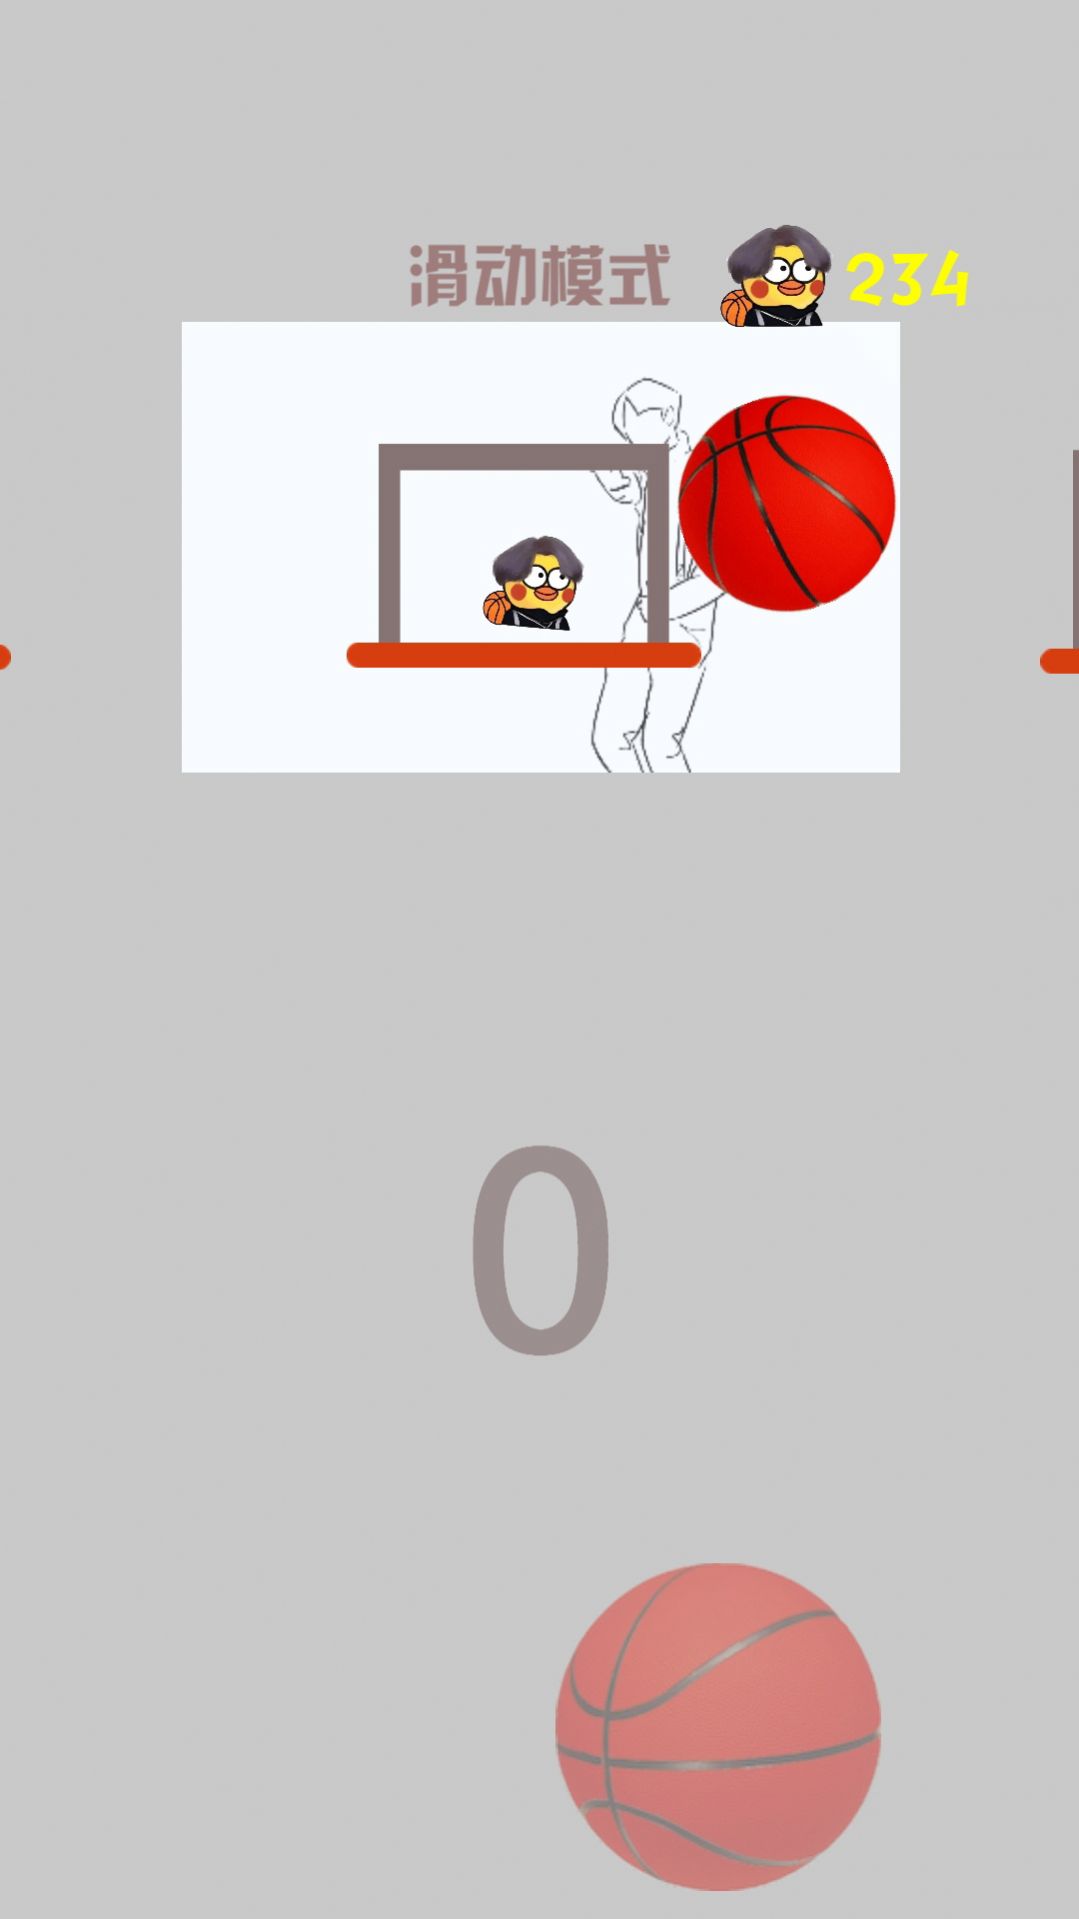 疯狂篮球高手游戏官方安卓版图片1